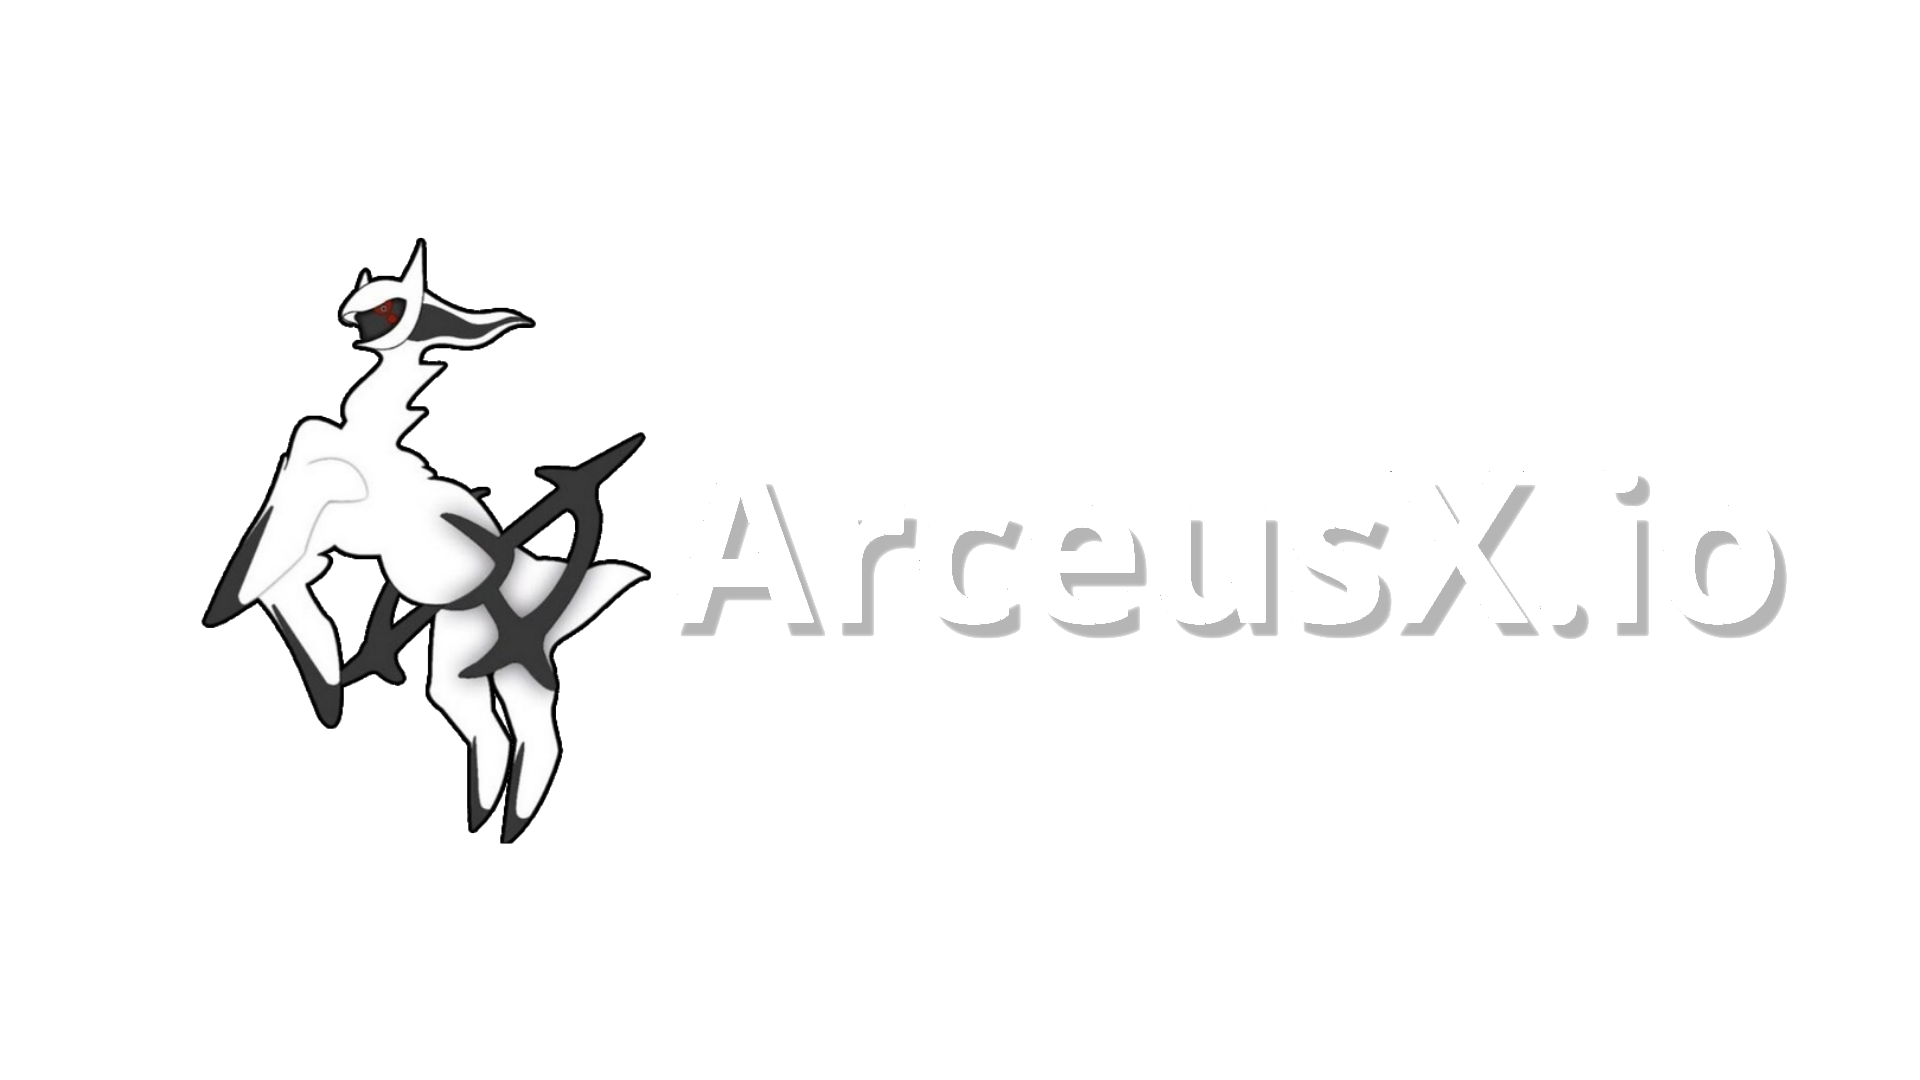 ARCEUS X V3 NEW UPDATE! Arceus X 2.1.4